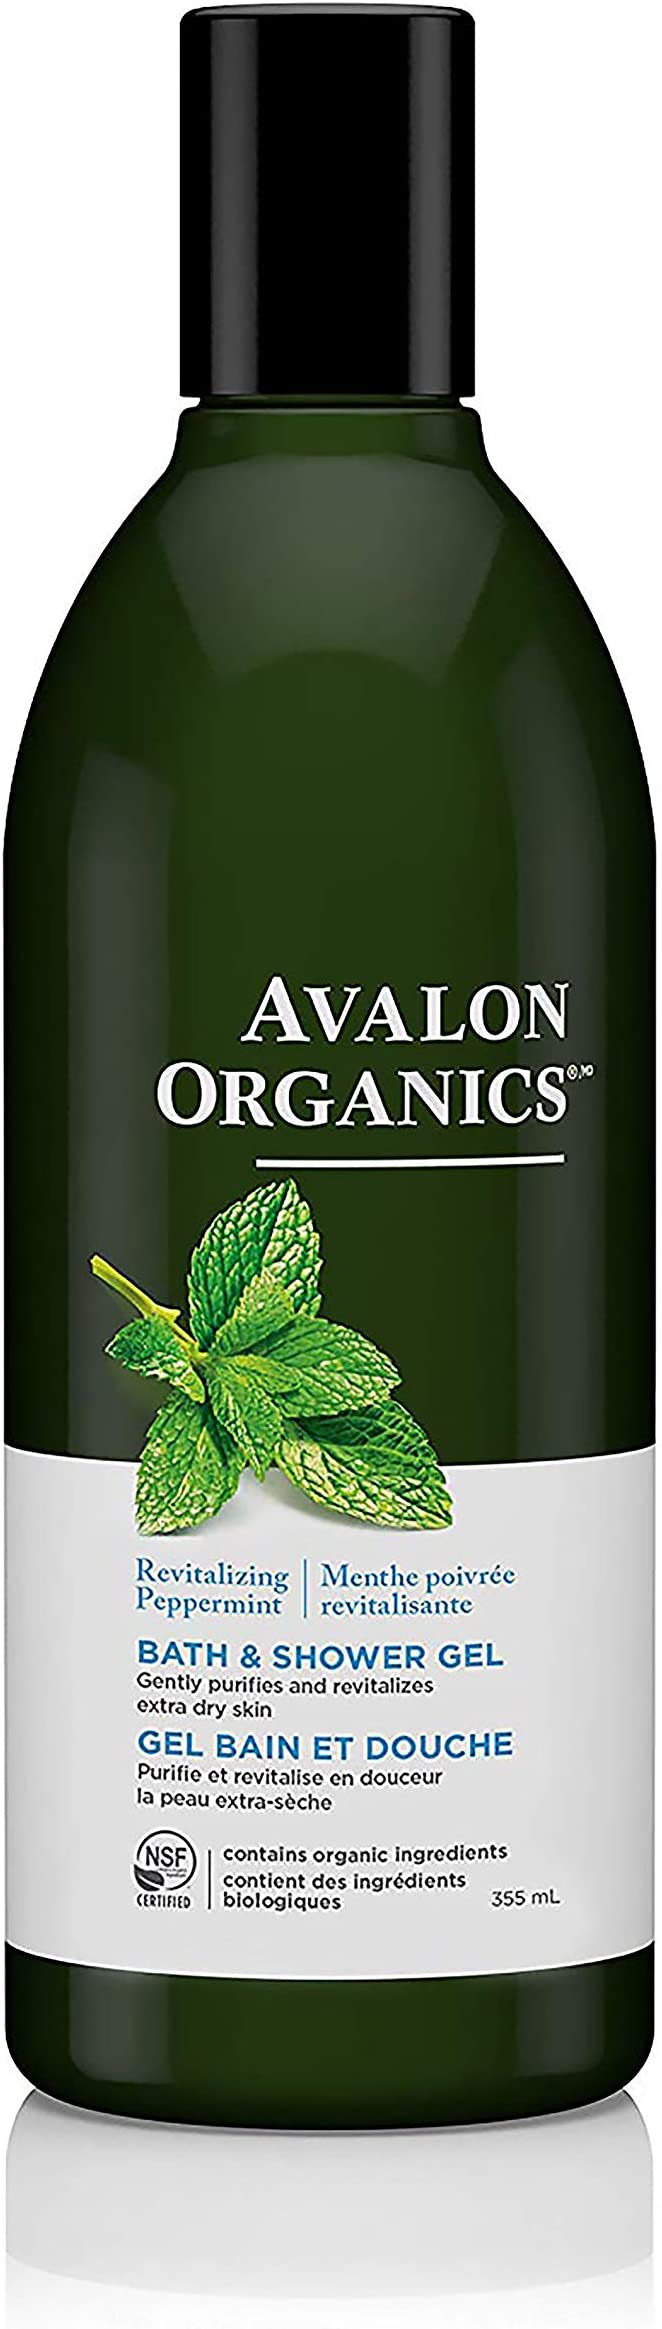 Gel bain et douche bio à la menthe poivrée - Avalon Organics